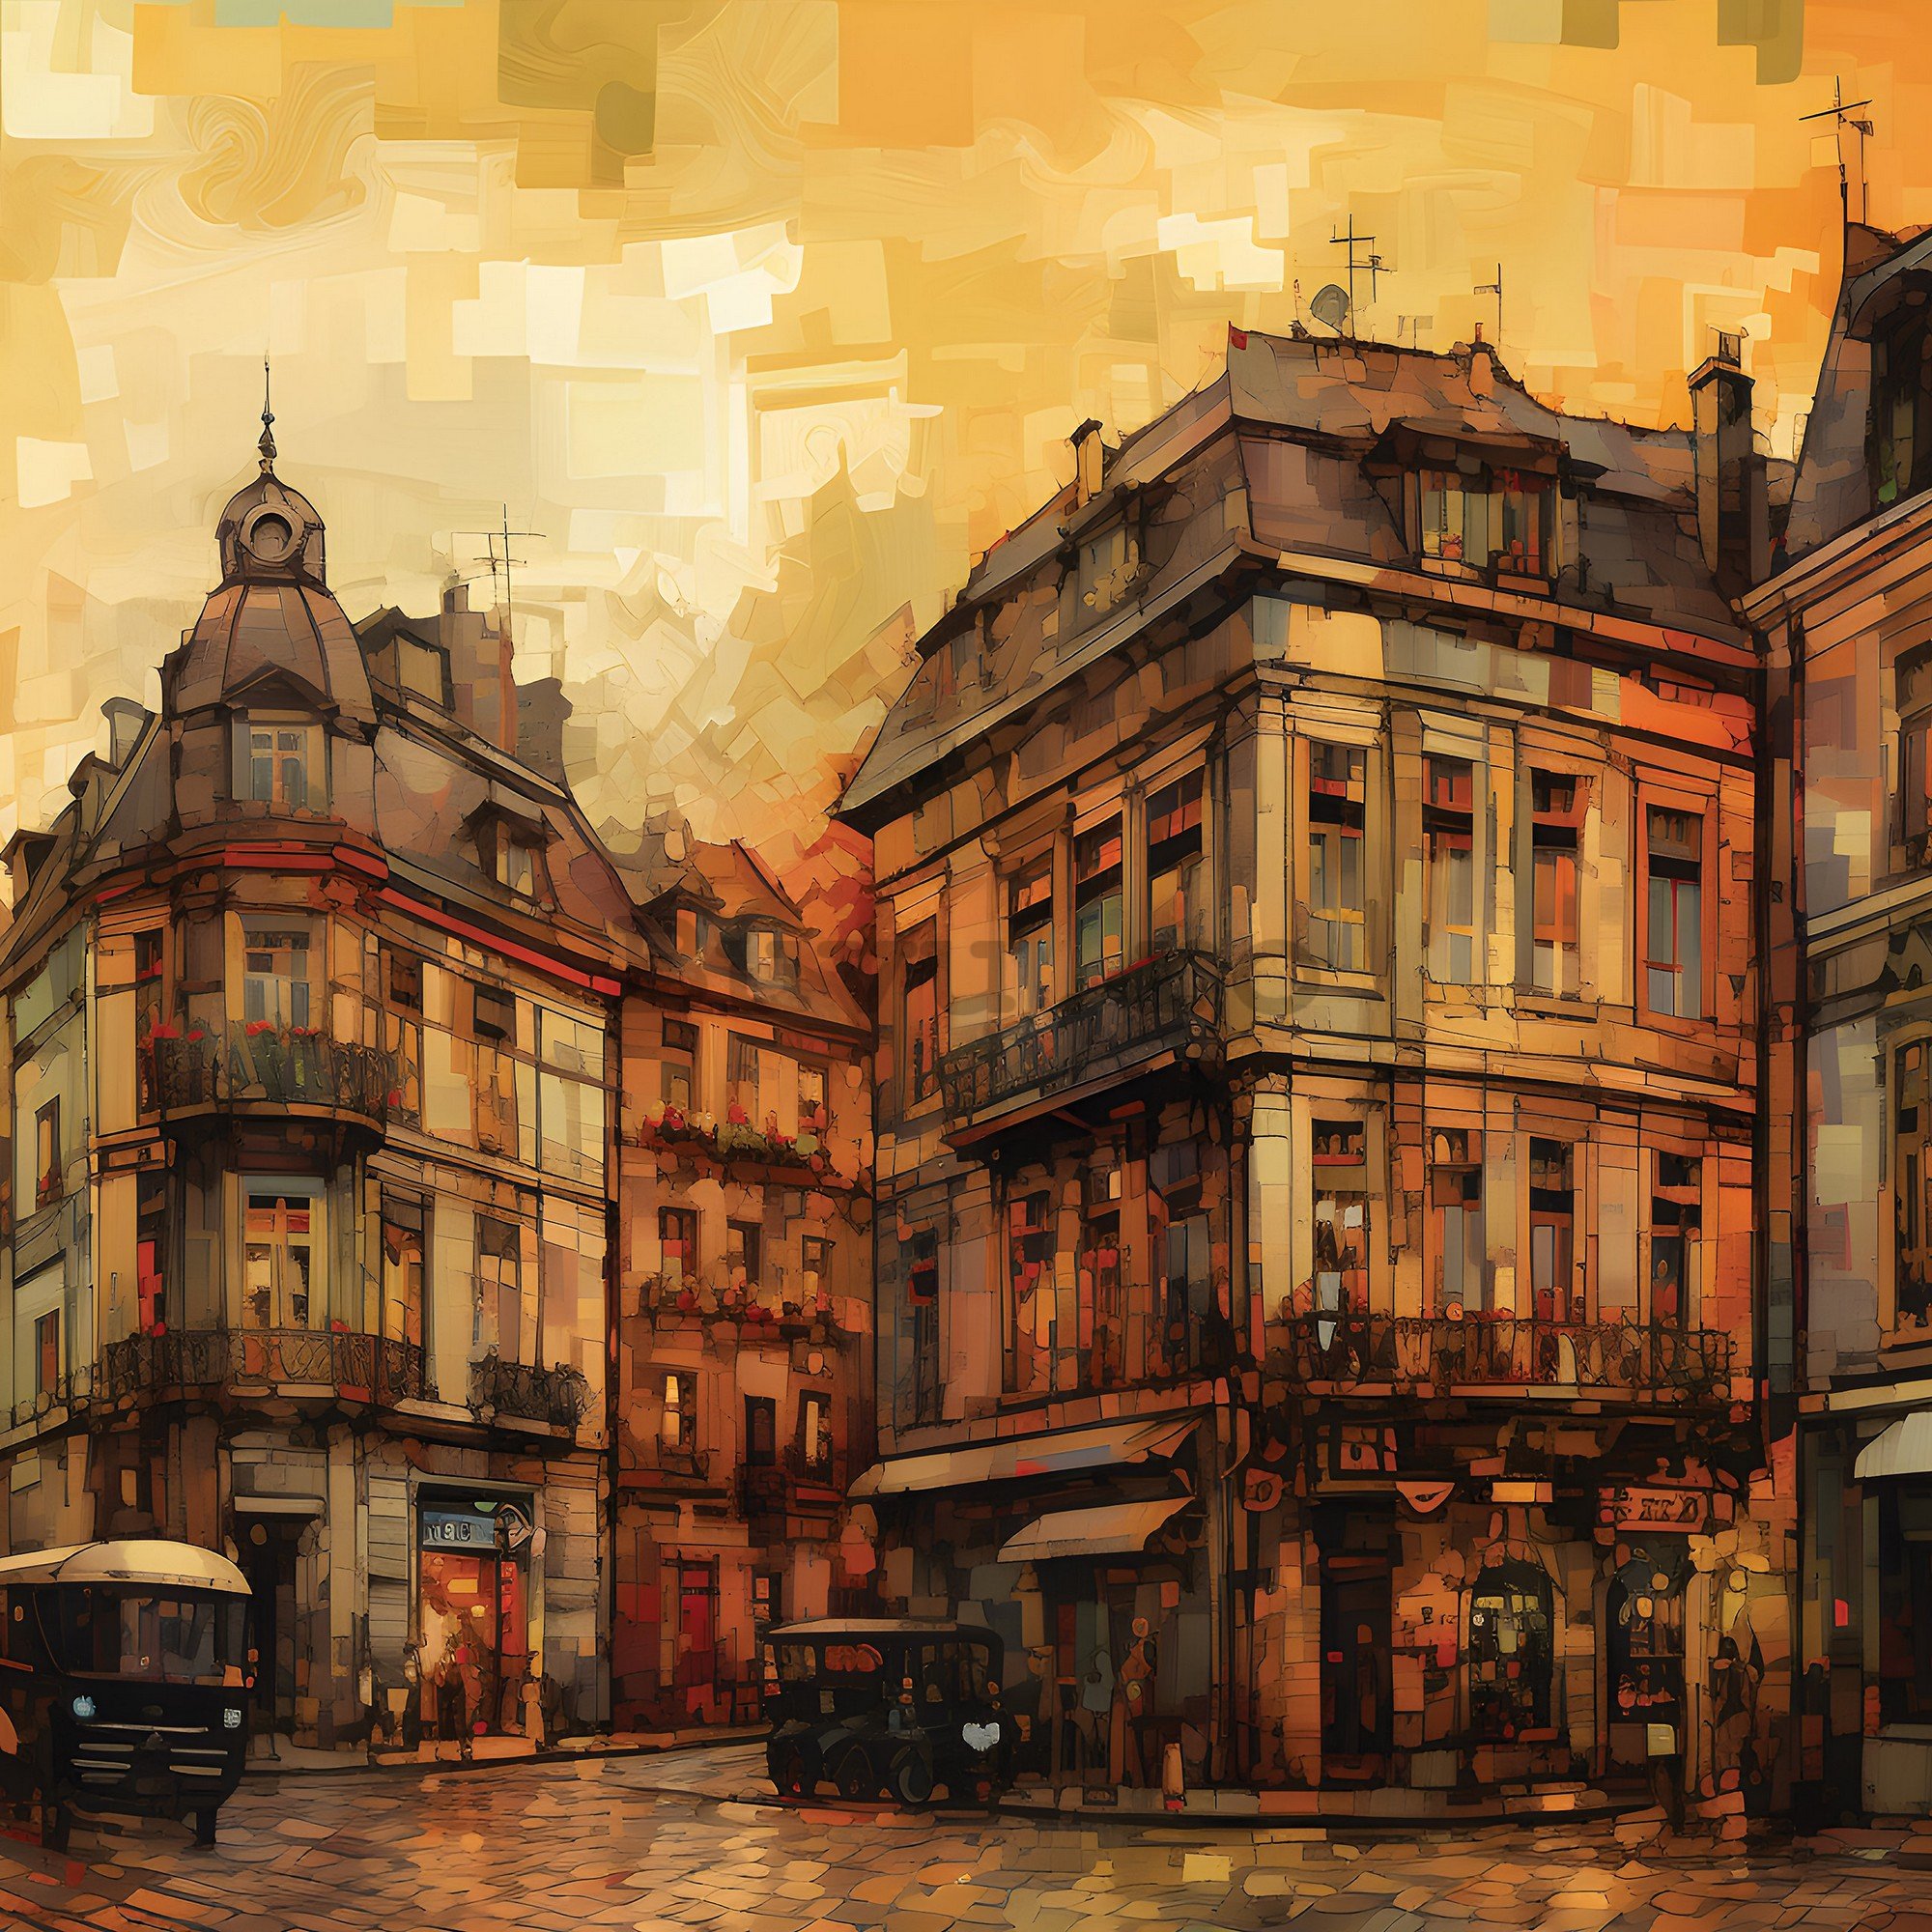 Fototapet vlies: City architecture oil-colours painting - 416x254 cm